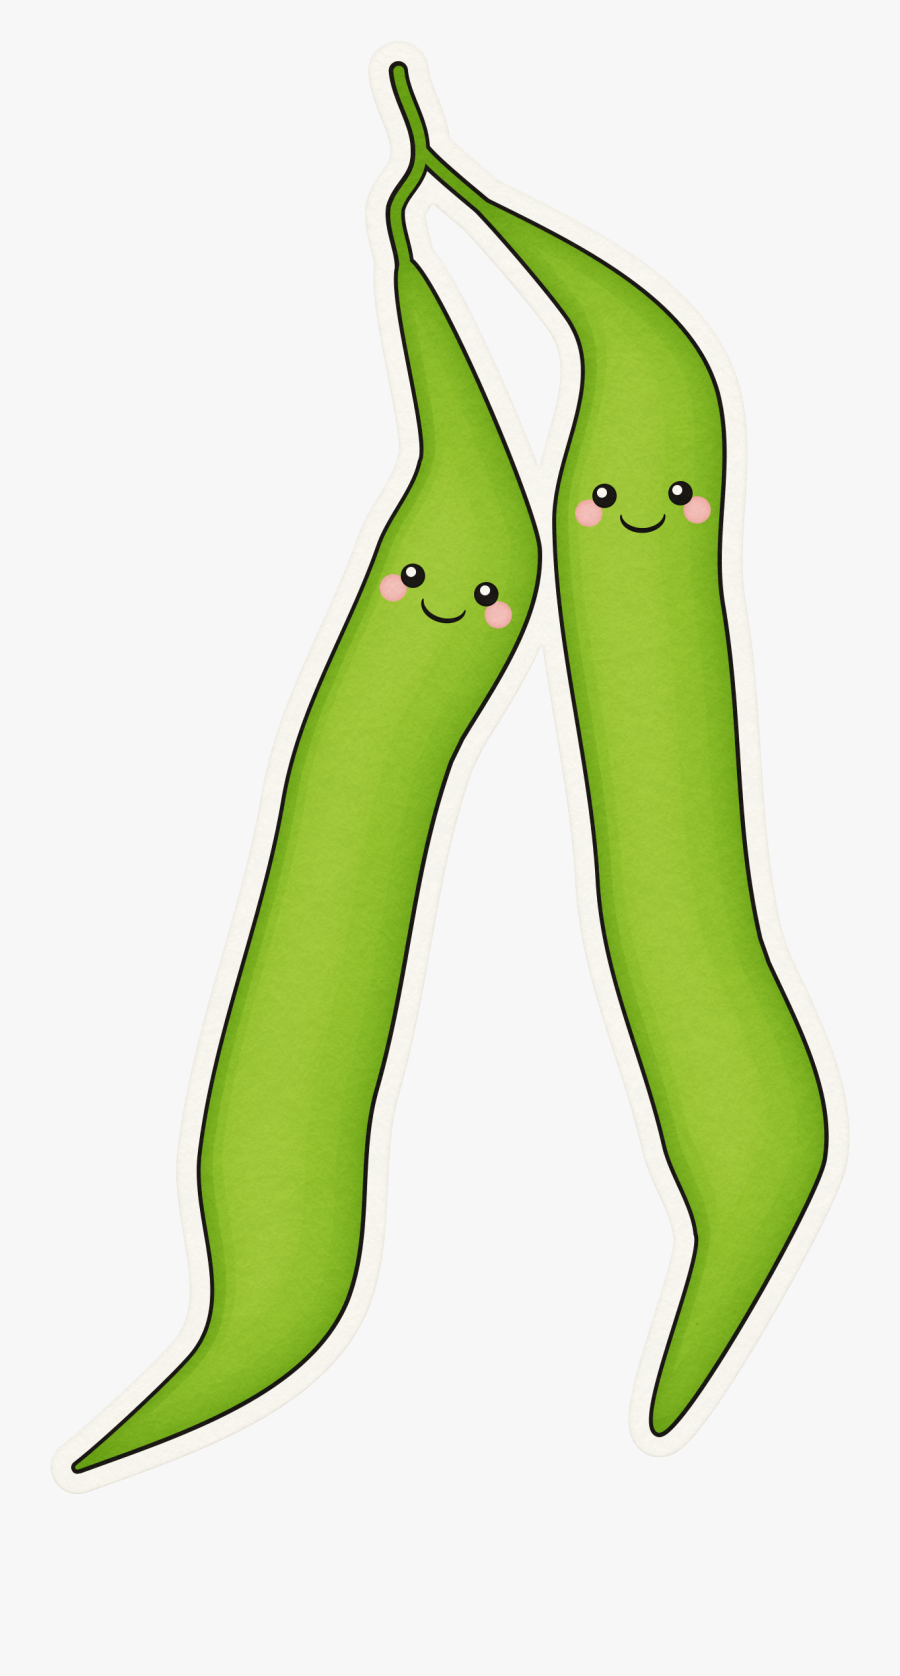 Cute Green Bean Clipart - Cartoon Green Bean Clipart, Transparent Clipart